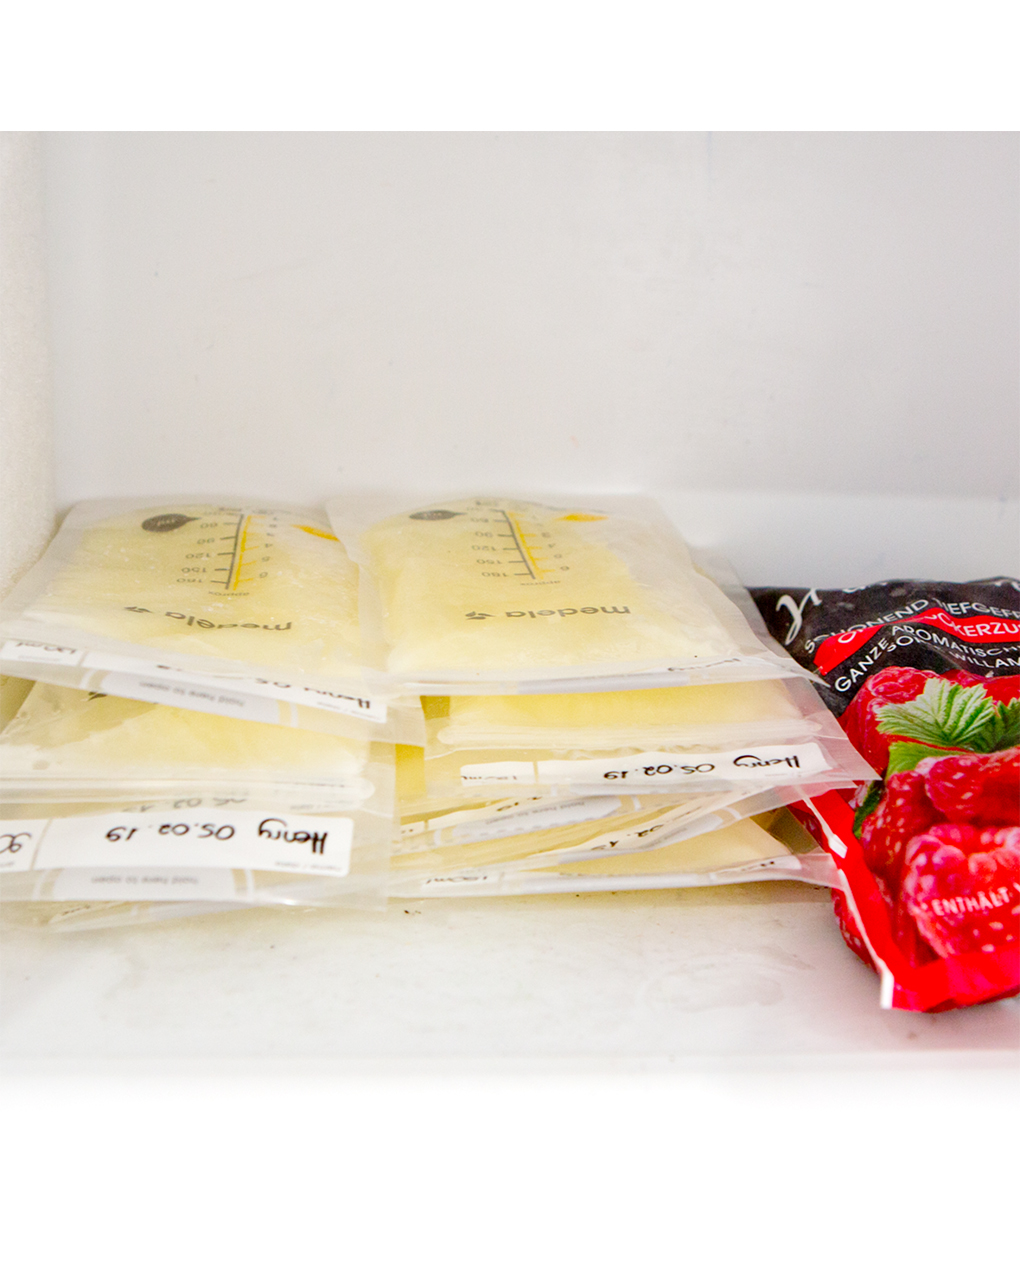 Medela breast milk storage bags σακουλάκια φύλαξης μητρικού γάλακτος, 25 τεμ. 180ml - Medela